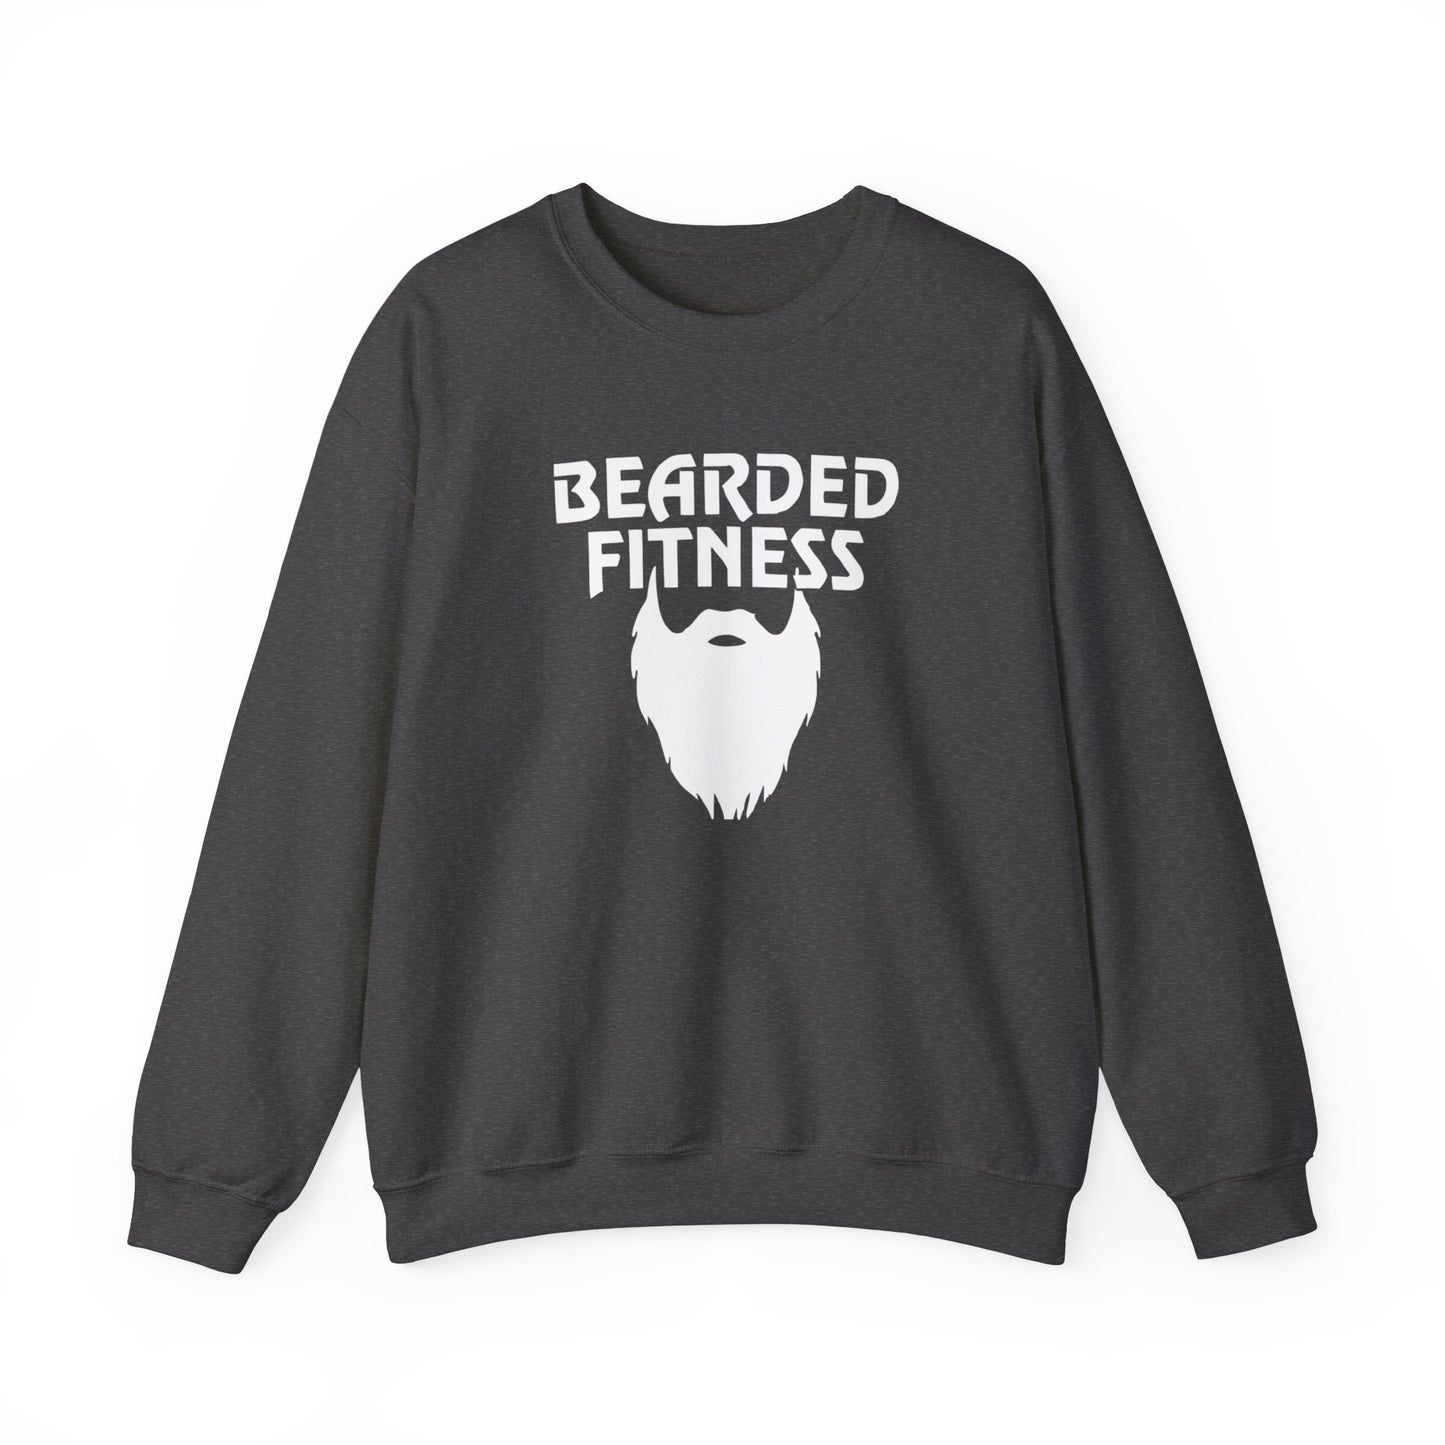 OG Bearded Fitness Sweater